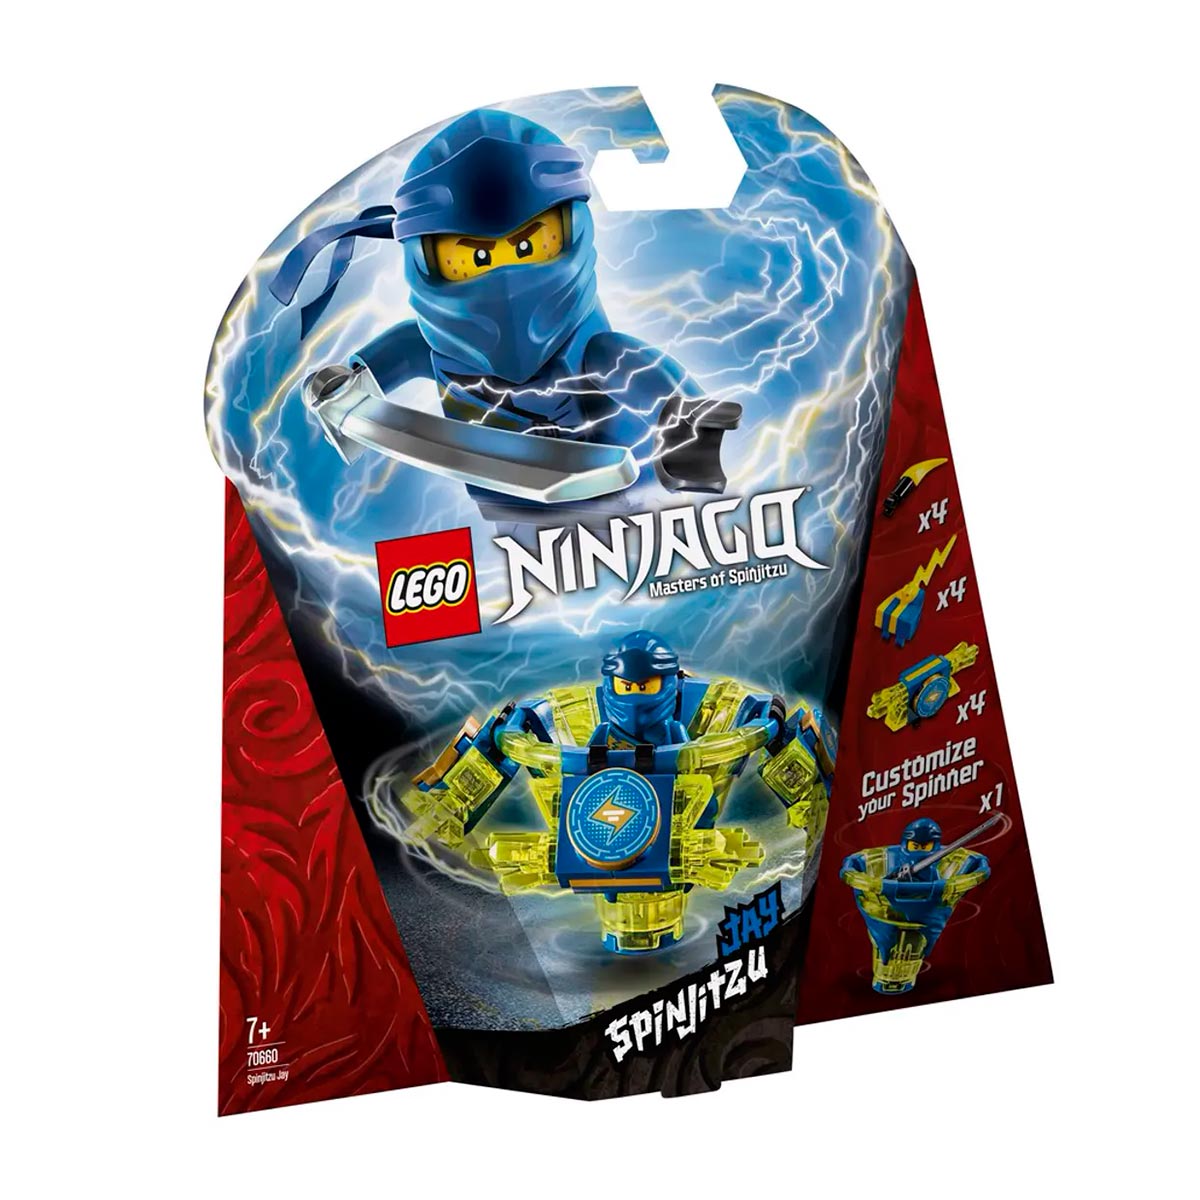 LEGO Ninjago - Spinjitzu Jay - 70660